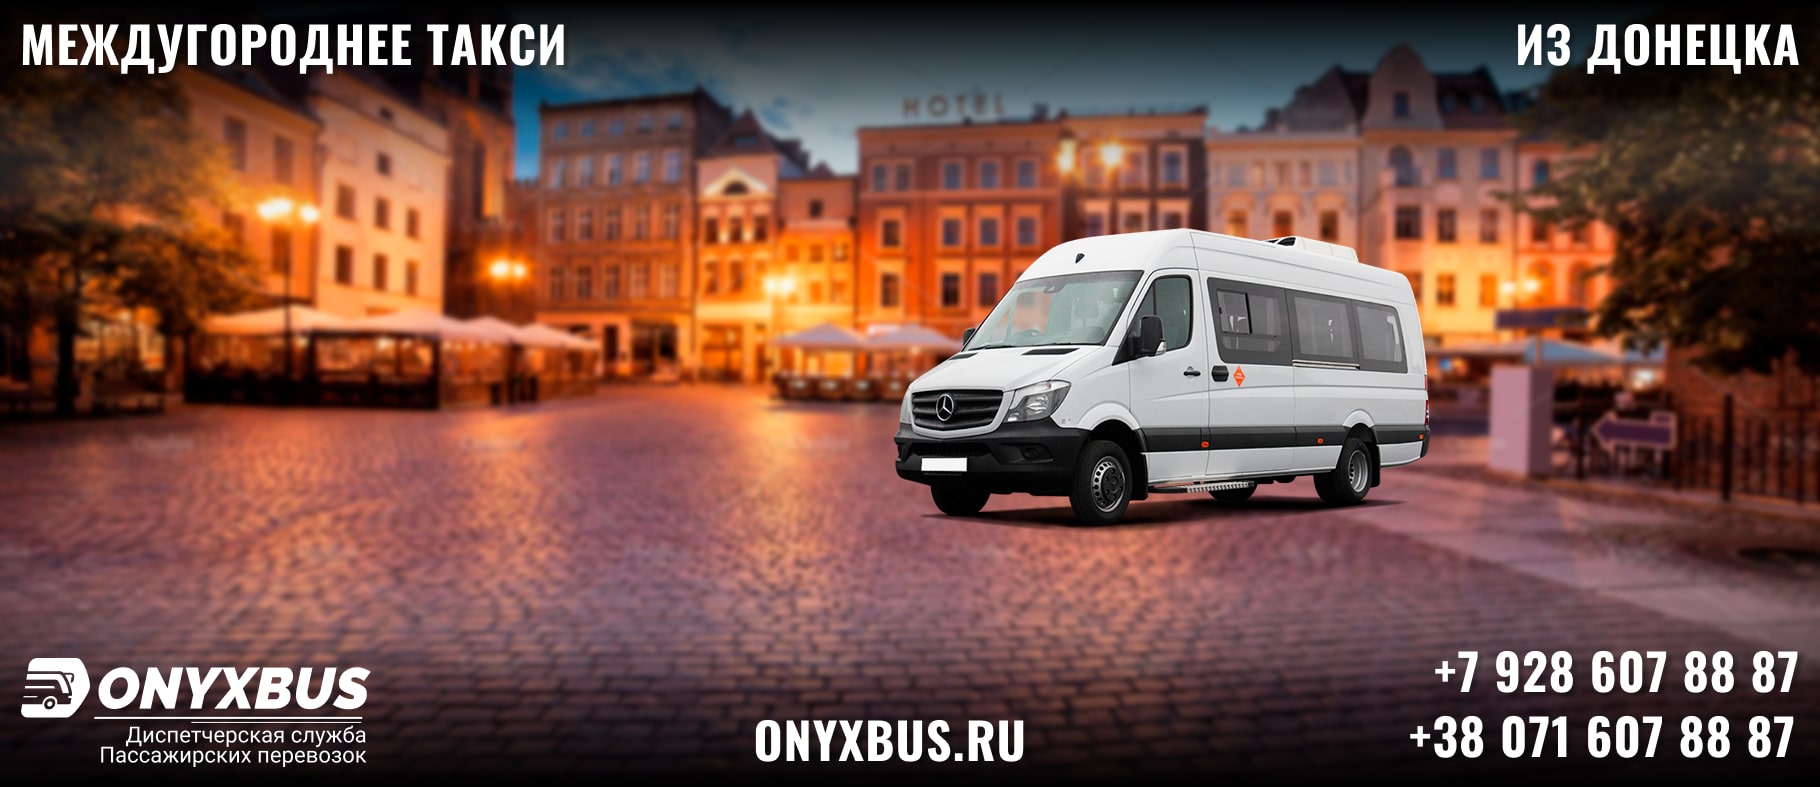 Заказ <br>Микроавтобуса Донецк - Бахчисарай